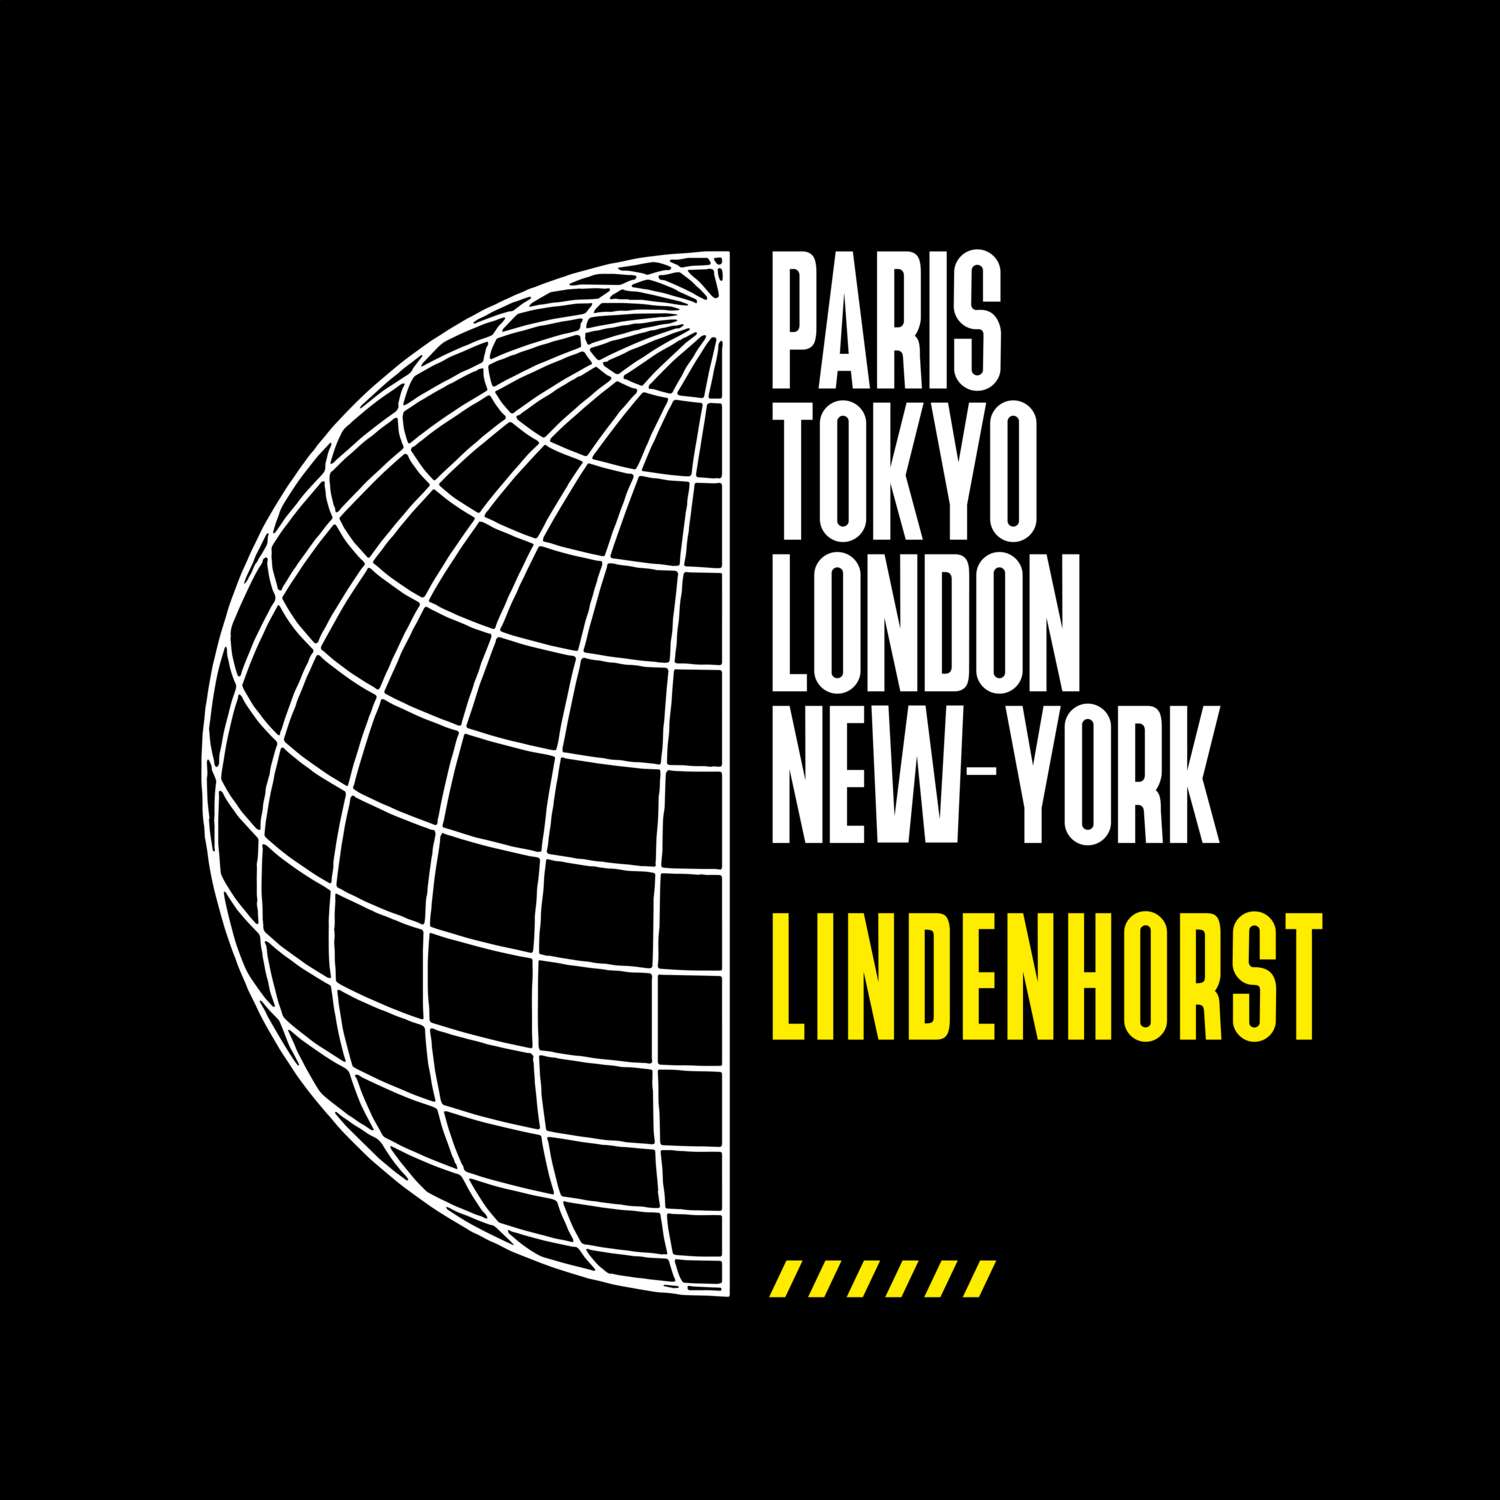 Lindenhorst T-Shirt »Paris Tokyo London«